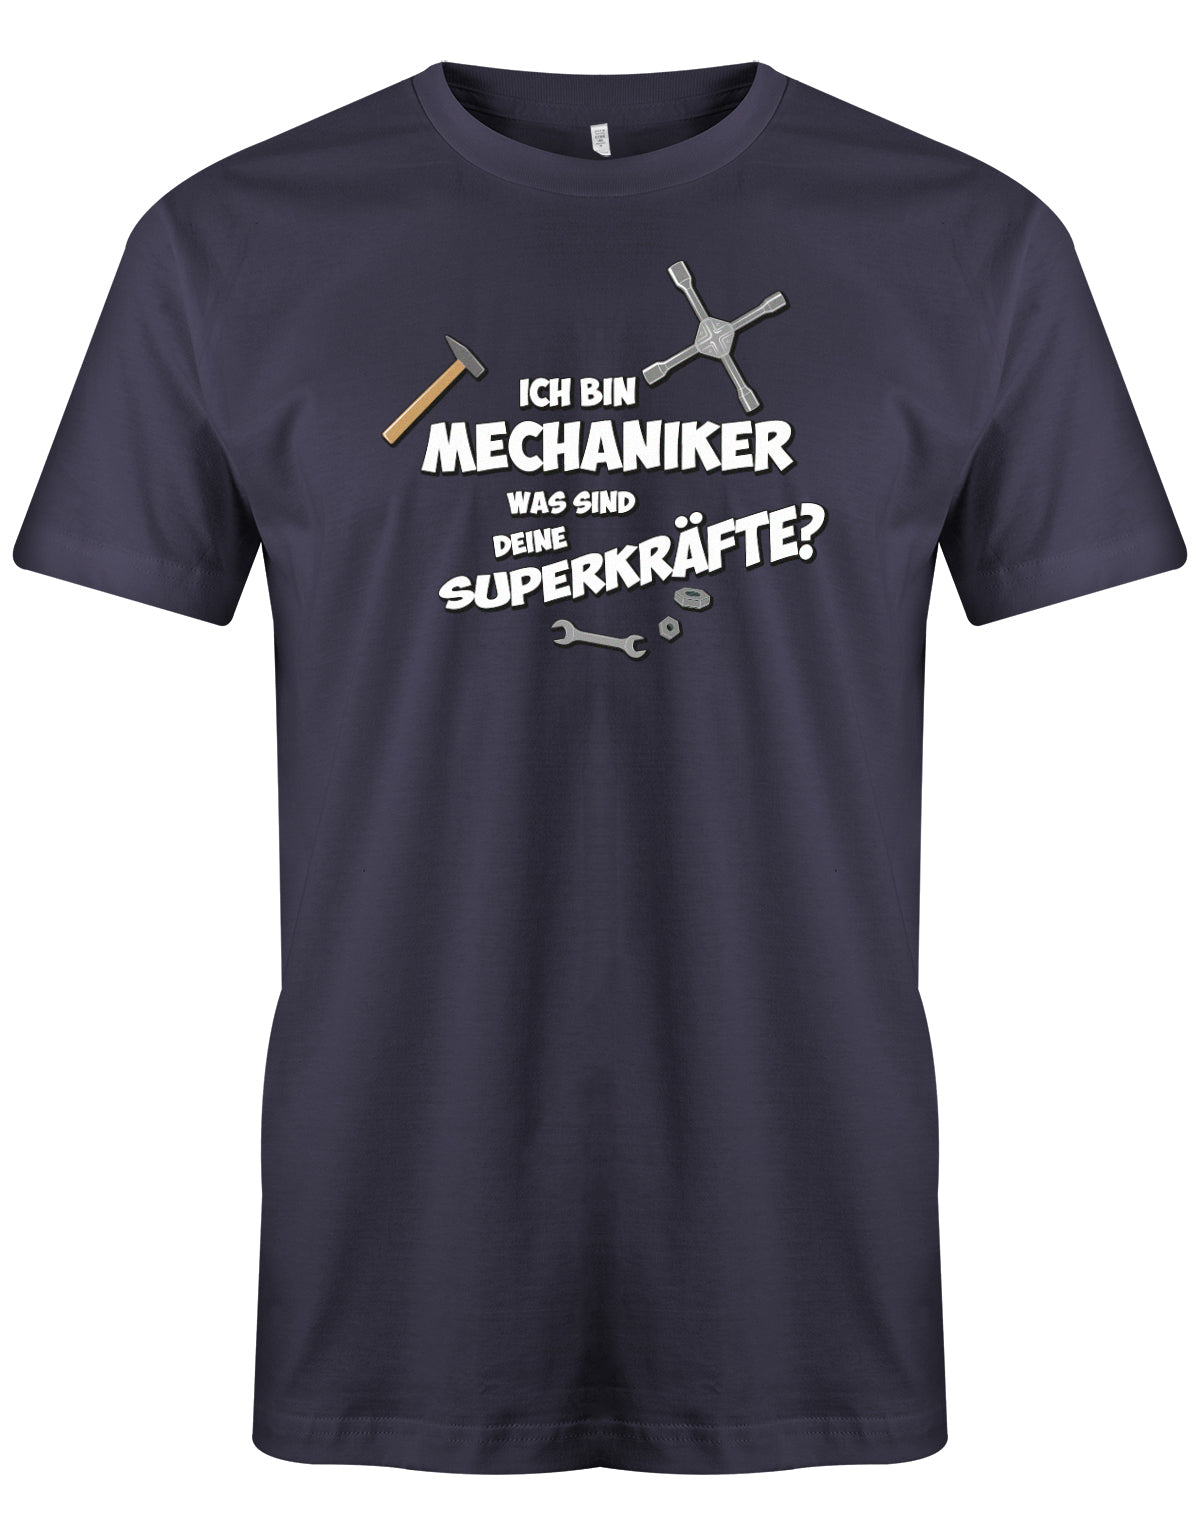 KFZ Mechaniker Shirt - Ich bin Mechaniker was sind deine Superkräfte? Navy